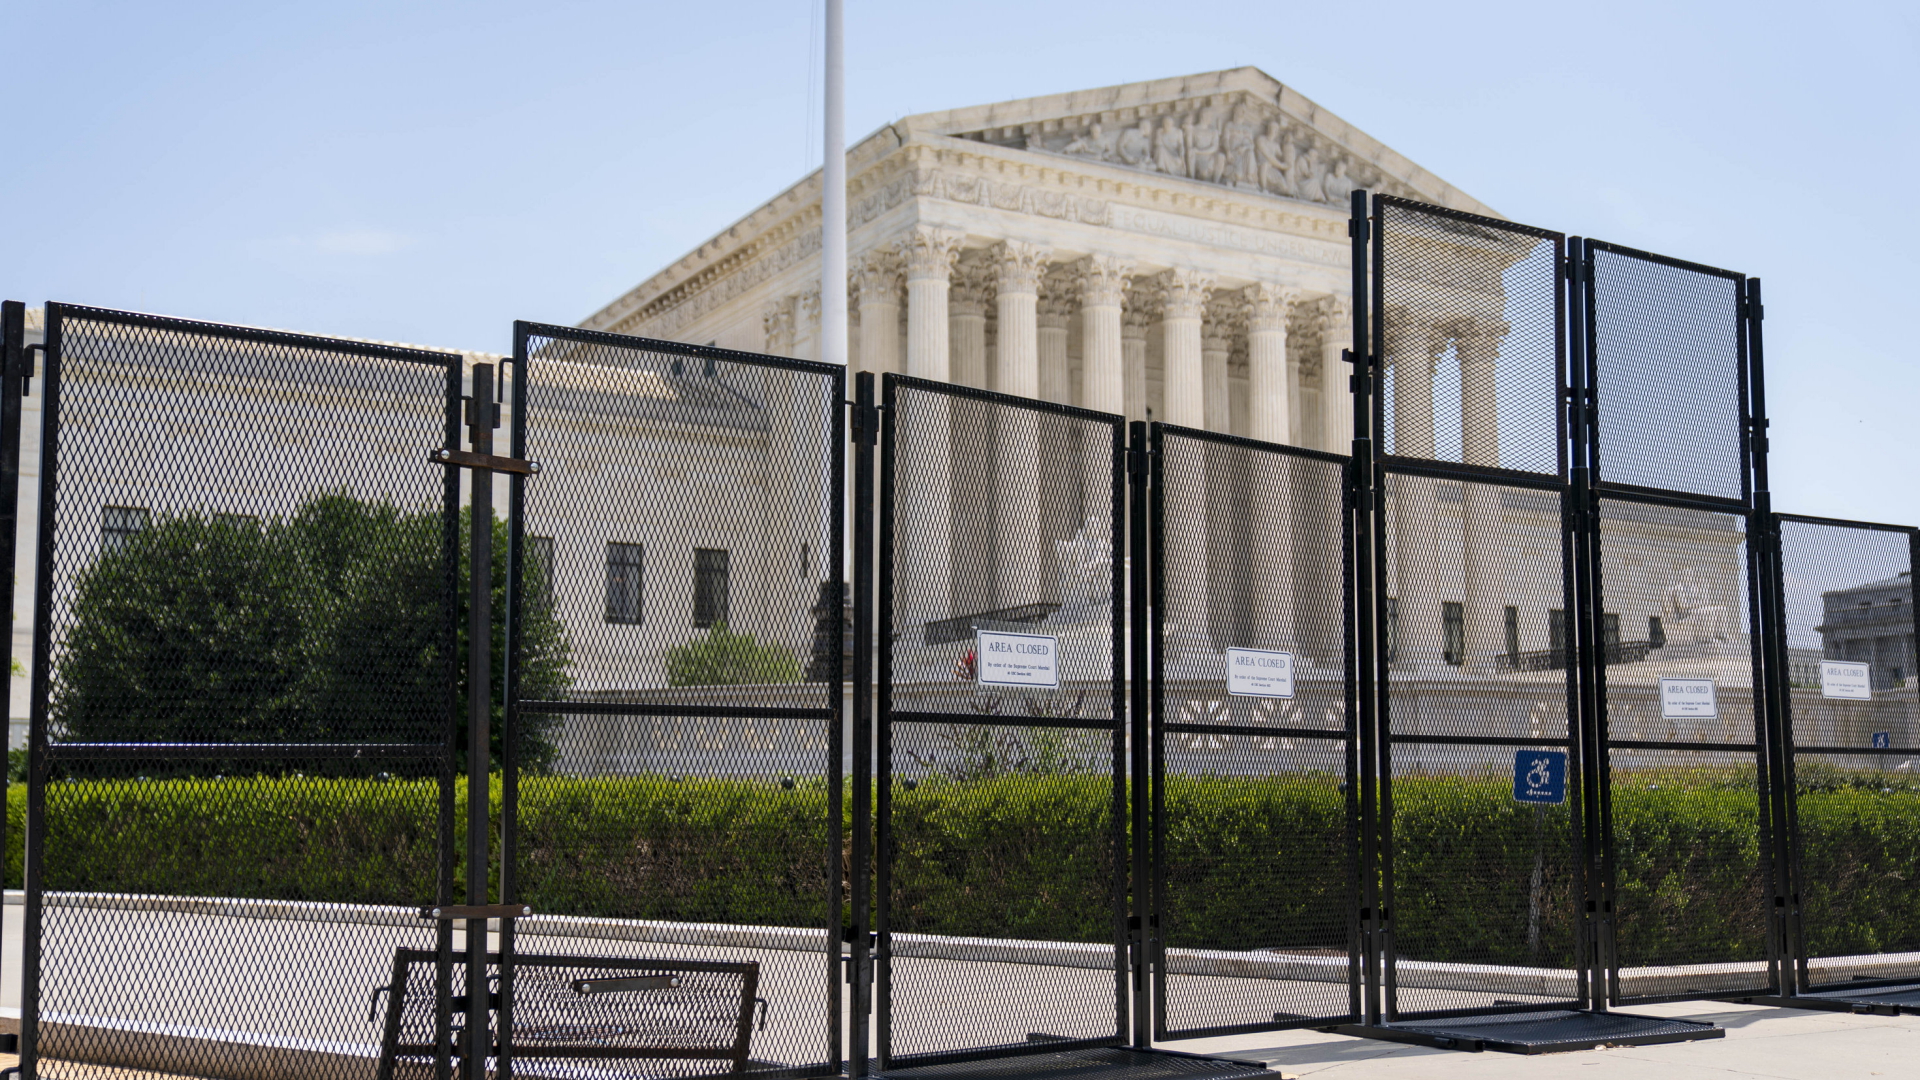 Vor dem Obersten Gerichtshof der USA in Washington D.C. haben die Behörden Absperrgitter aufgestellt | AP